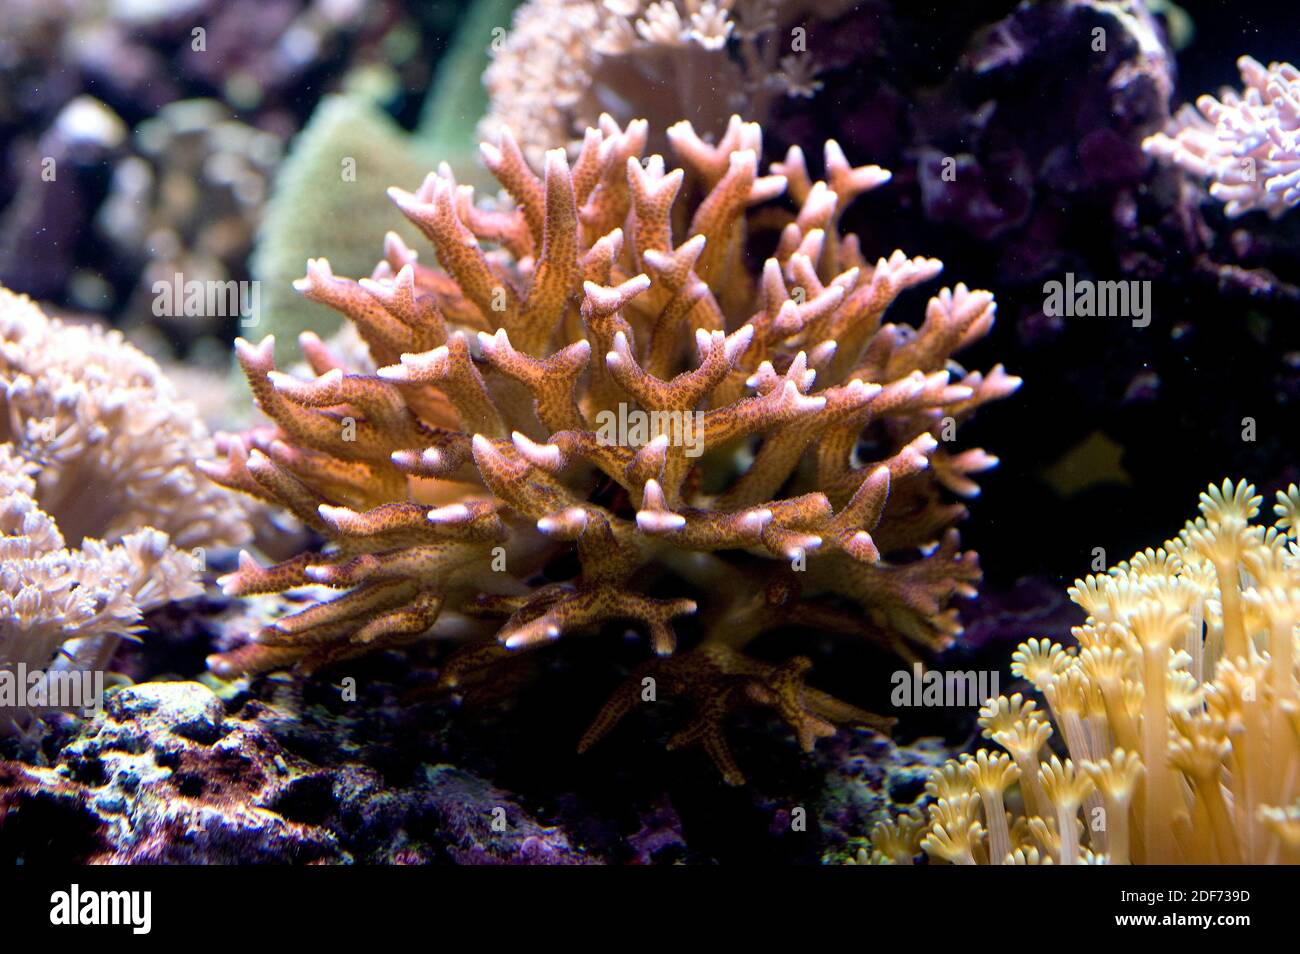 El coral de cuerno de Staghorn (Acropora cervicornis) es un coral pedregoso nativo de los mares tropicales. Cnidaria. Anthozoa. Acroporidae. Esta foto fue tomada en cautiverio. Foto de stock